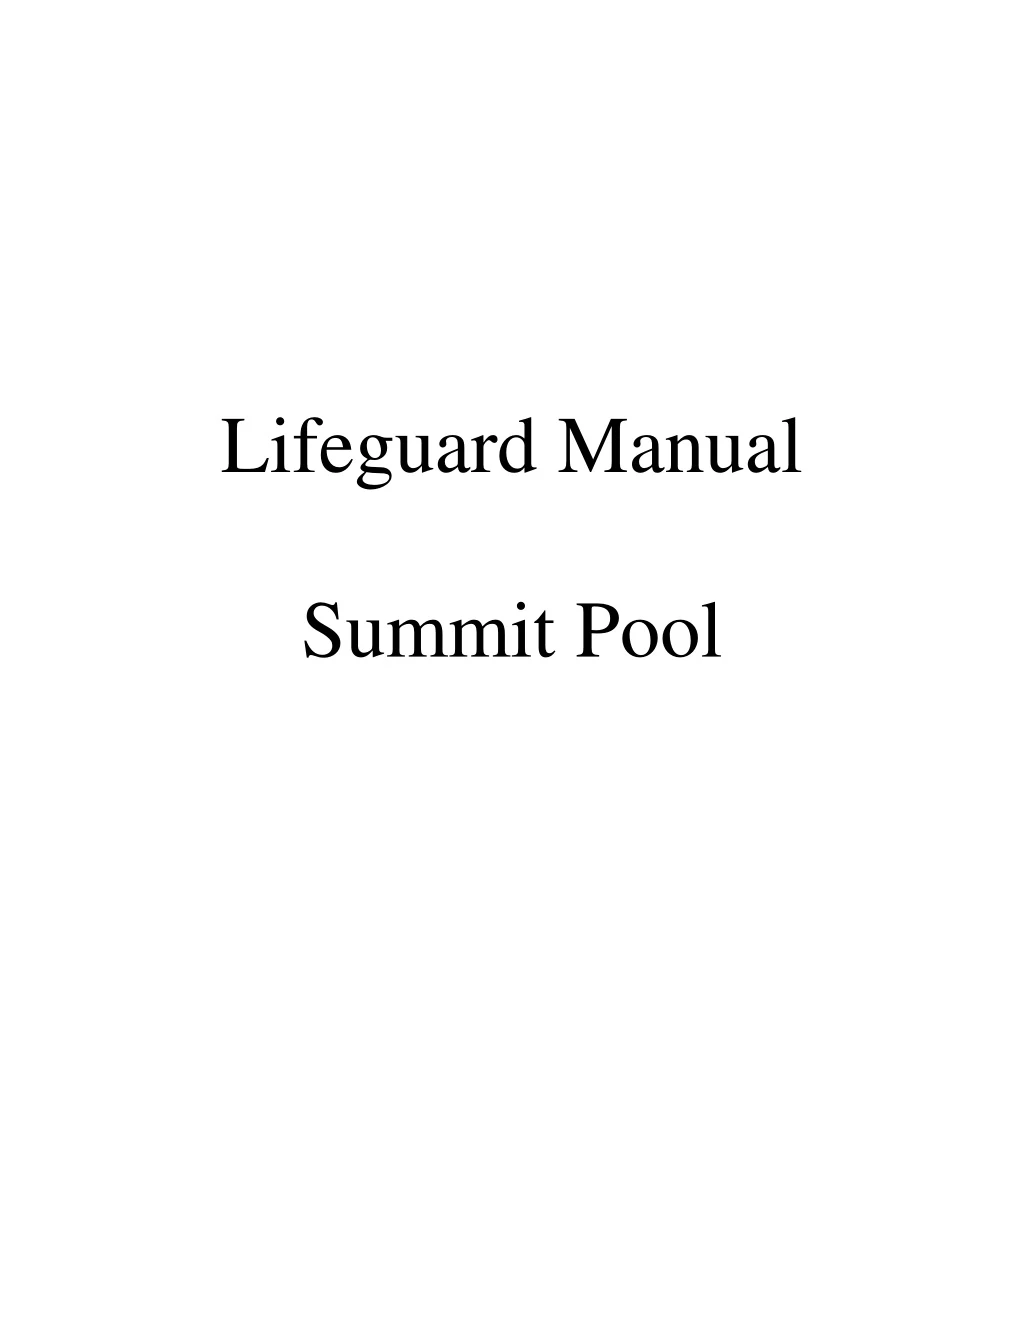 lifeguard manual summit pool